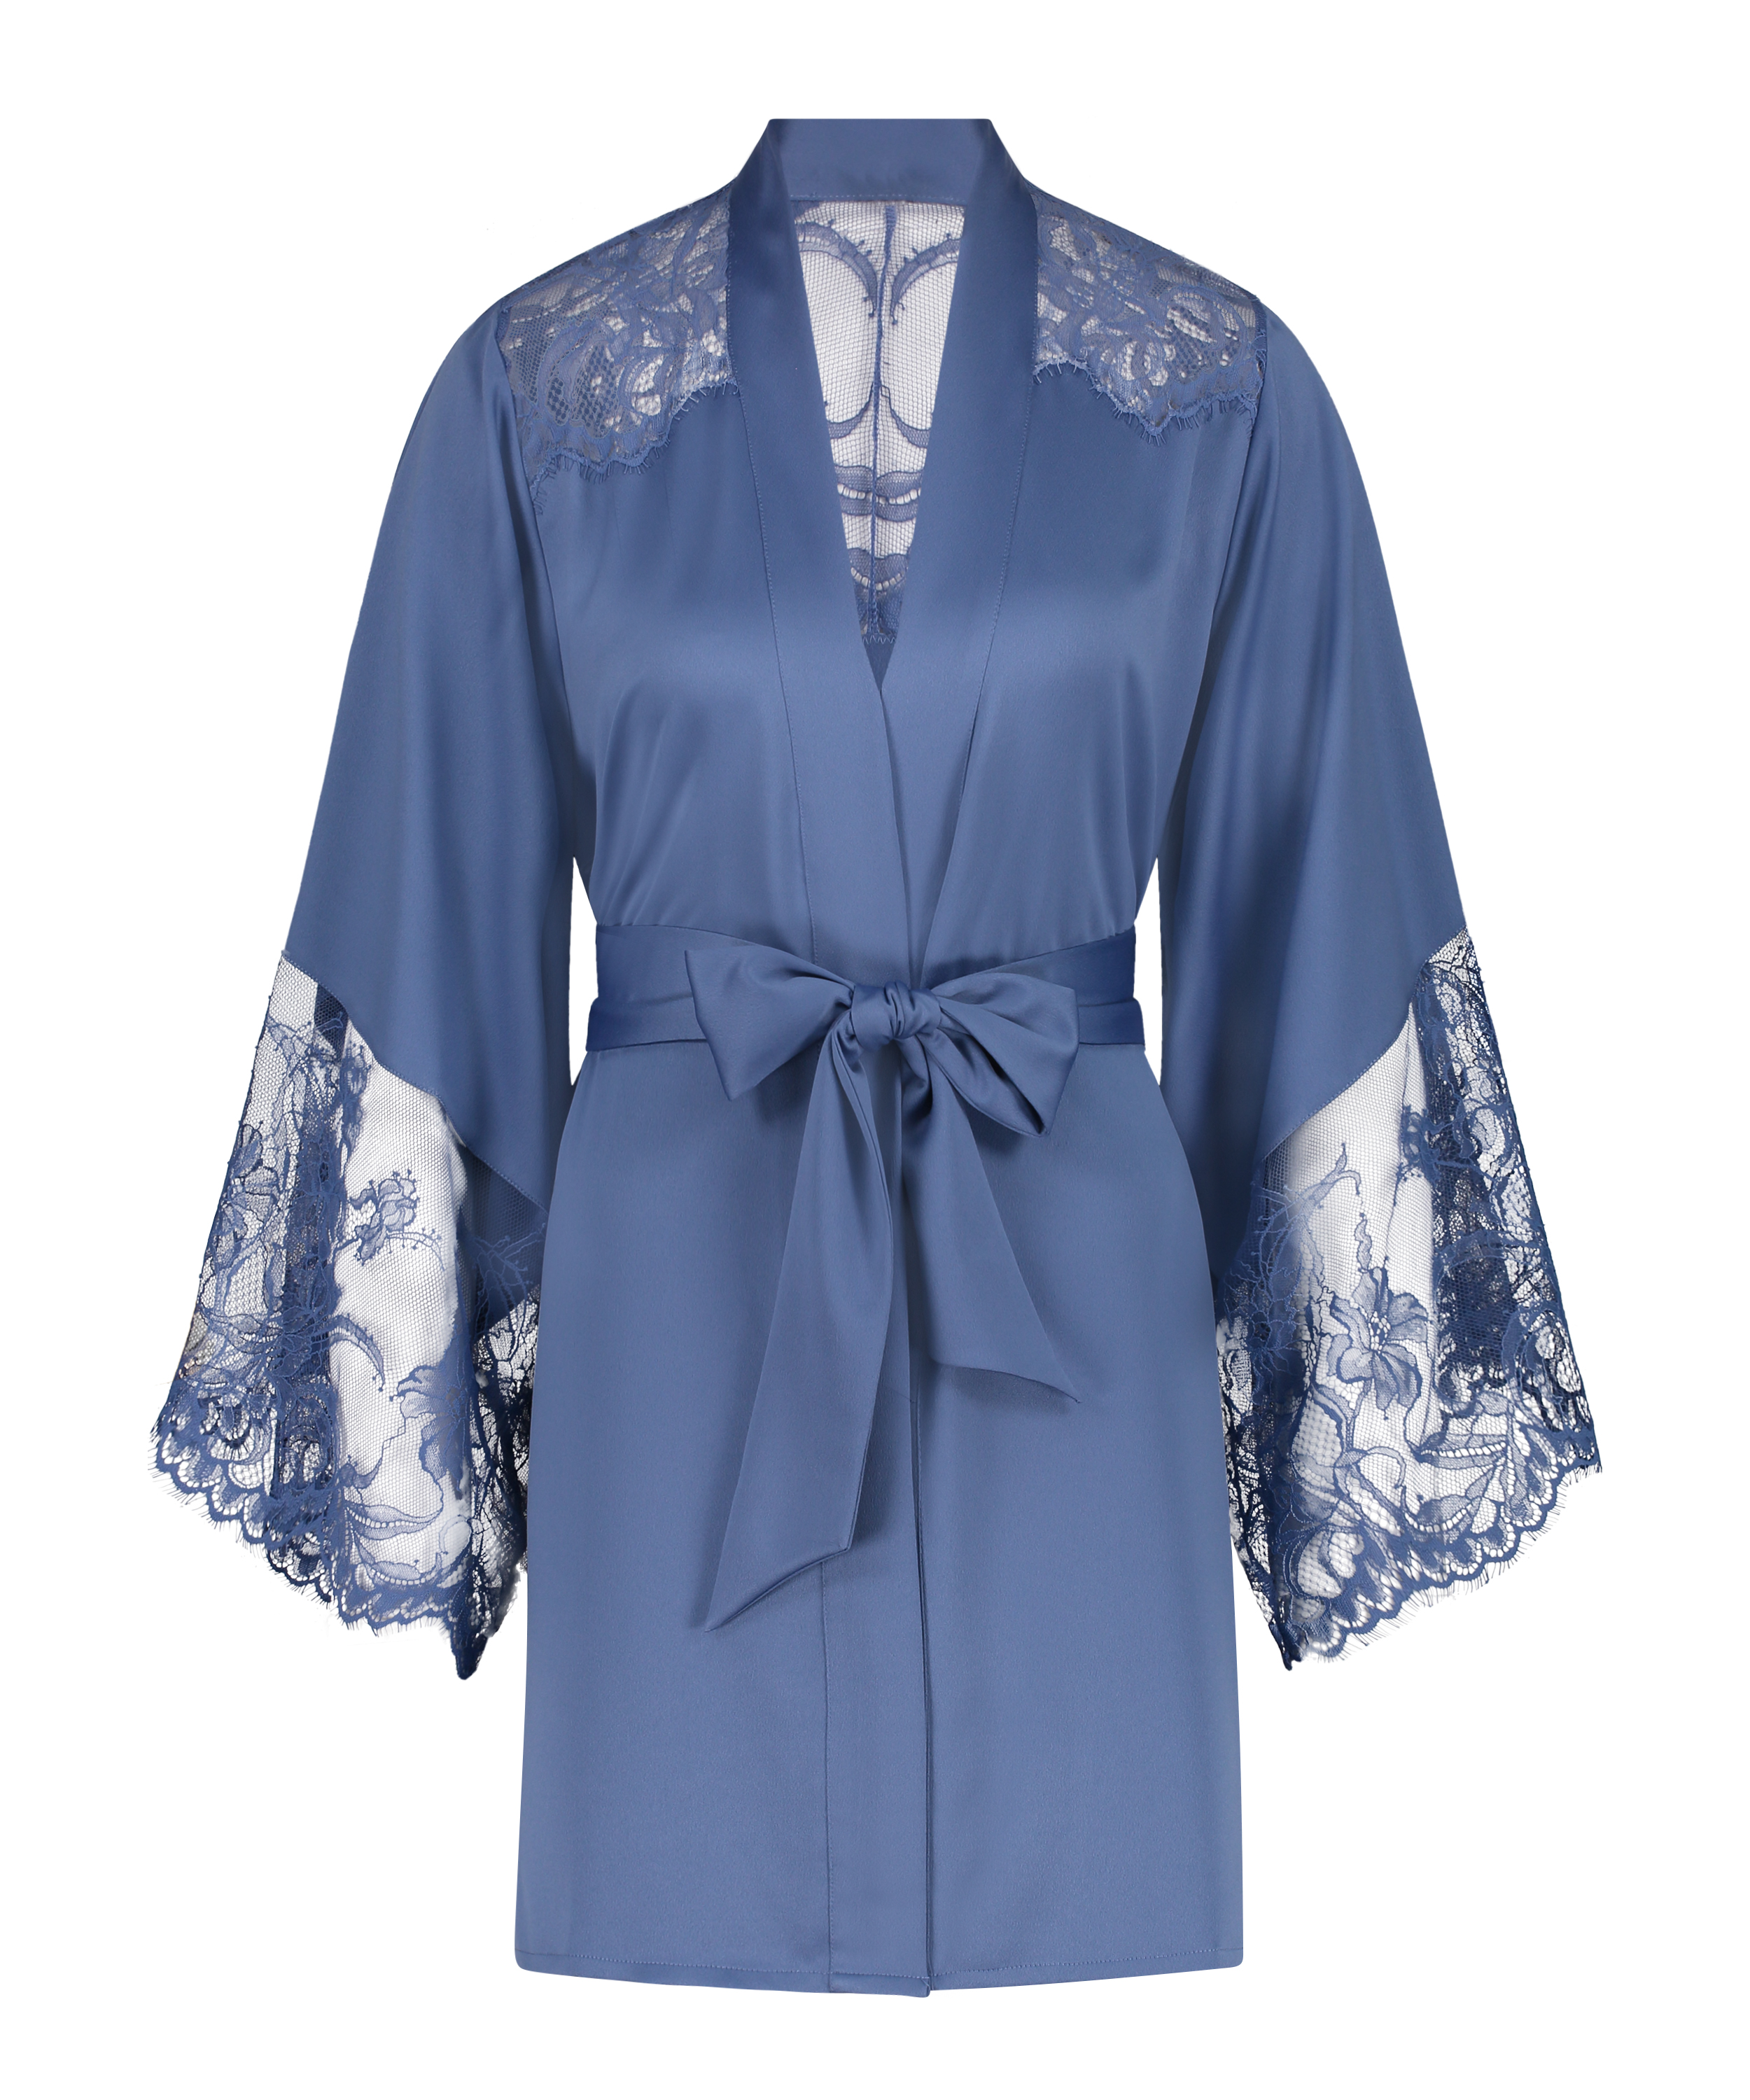 Kimono Sophia für 65.99€ - NOIR Kollektion - Hunkemöller